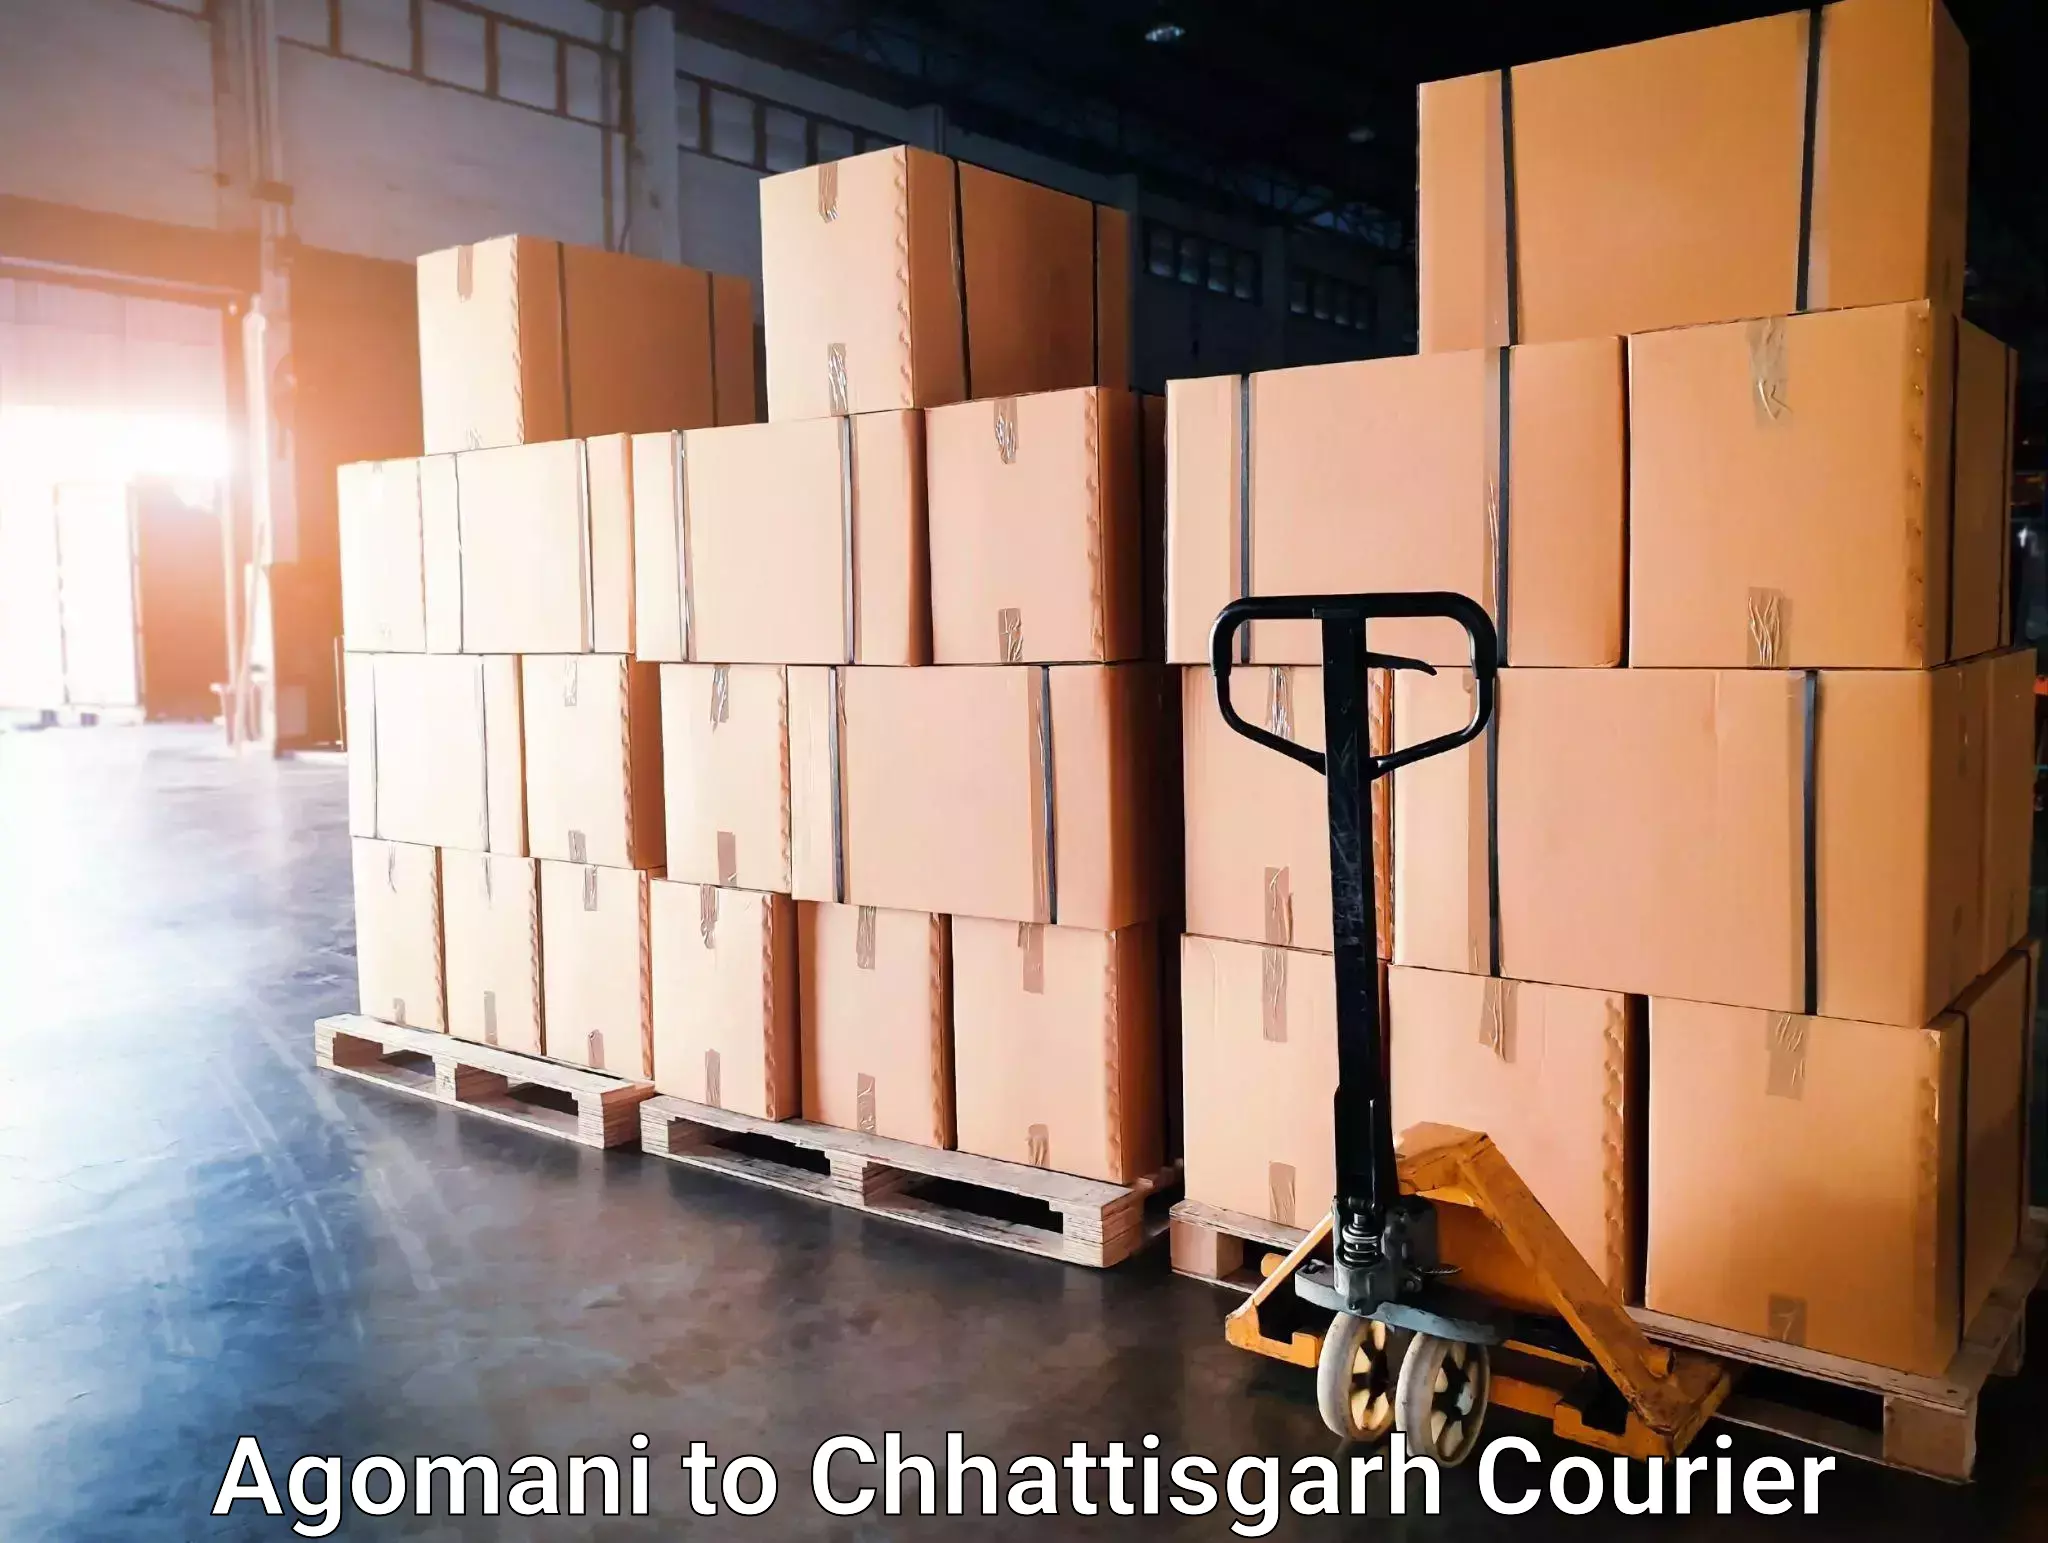 User-friendly delivery service Agomani to Berla